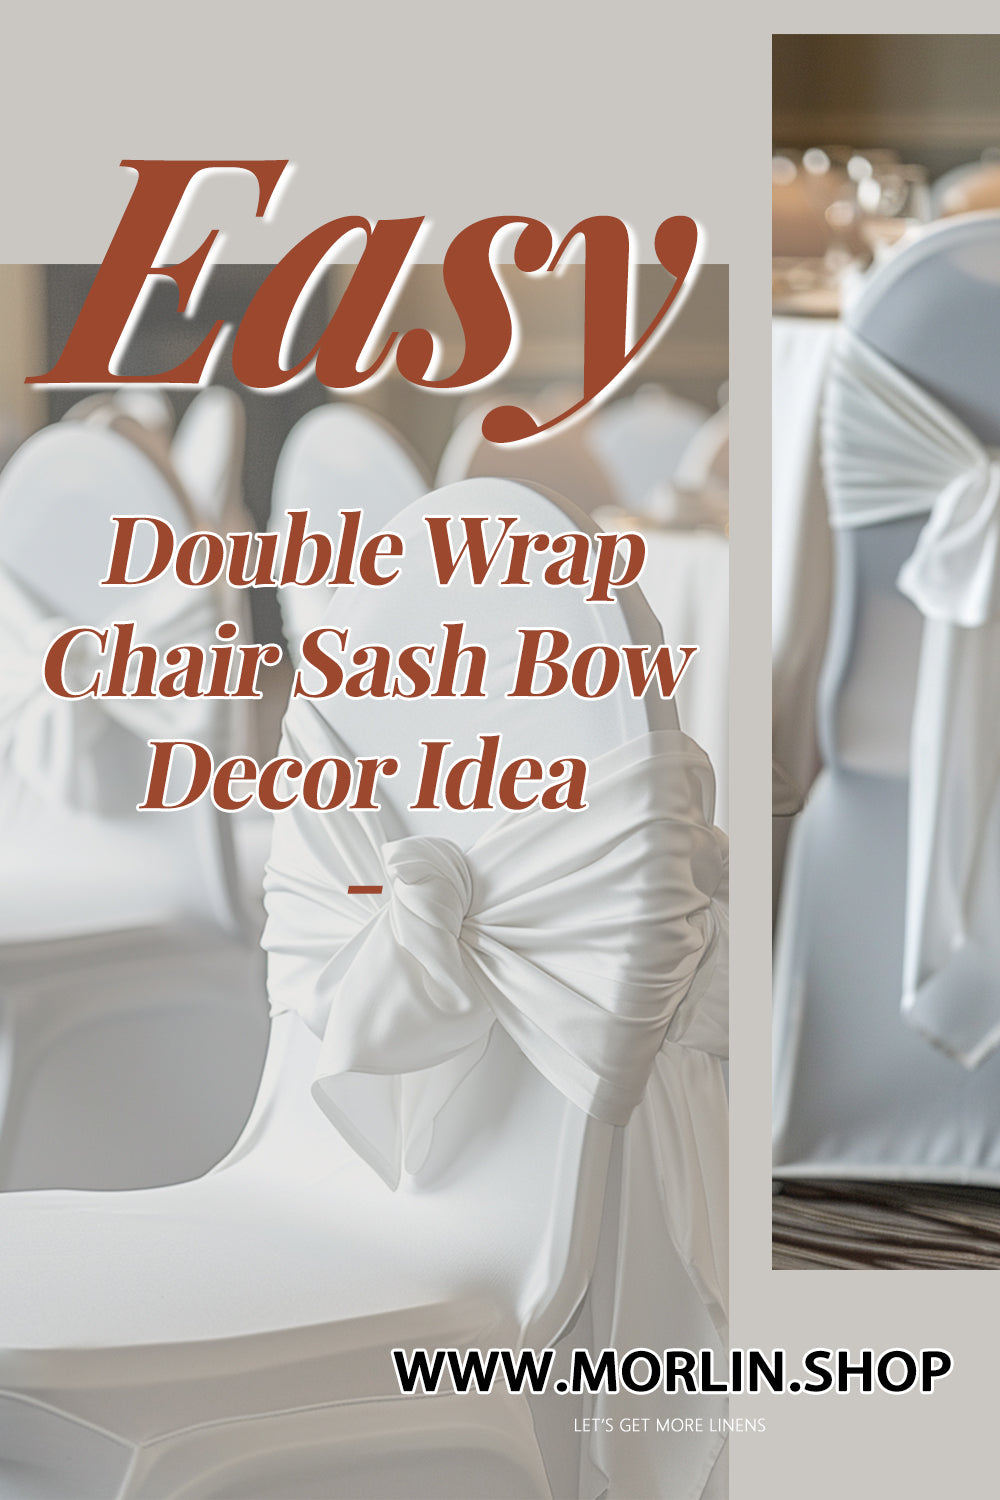 Easy Double Wrap Chair Sash Bow Decor Idea